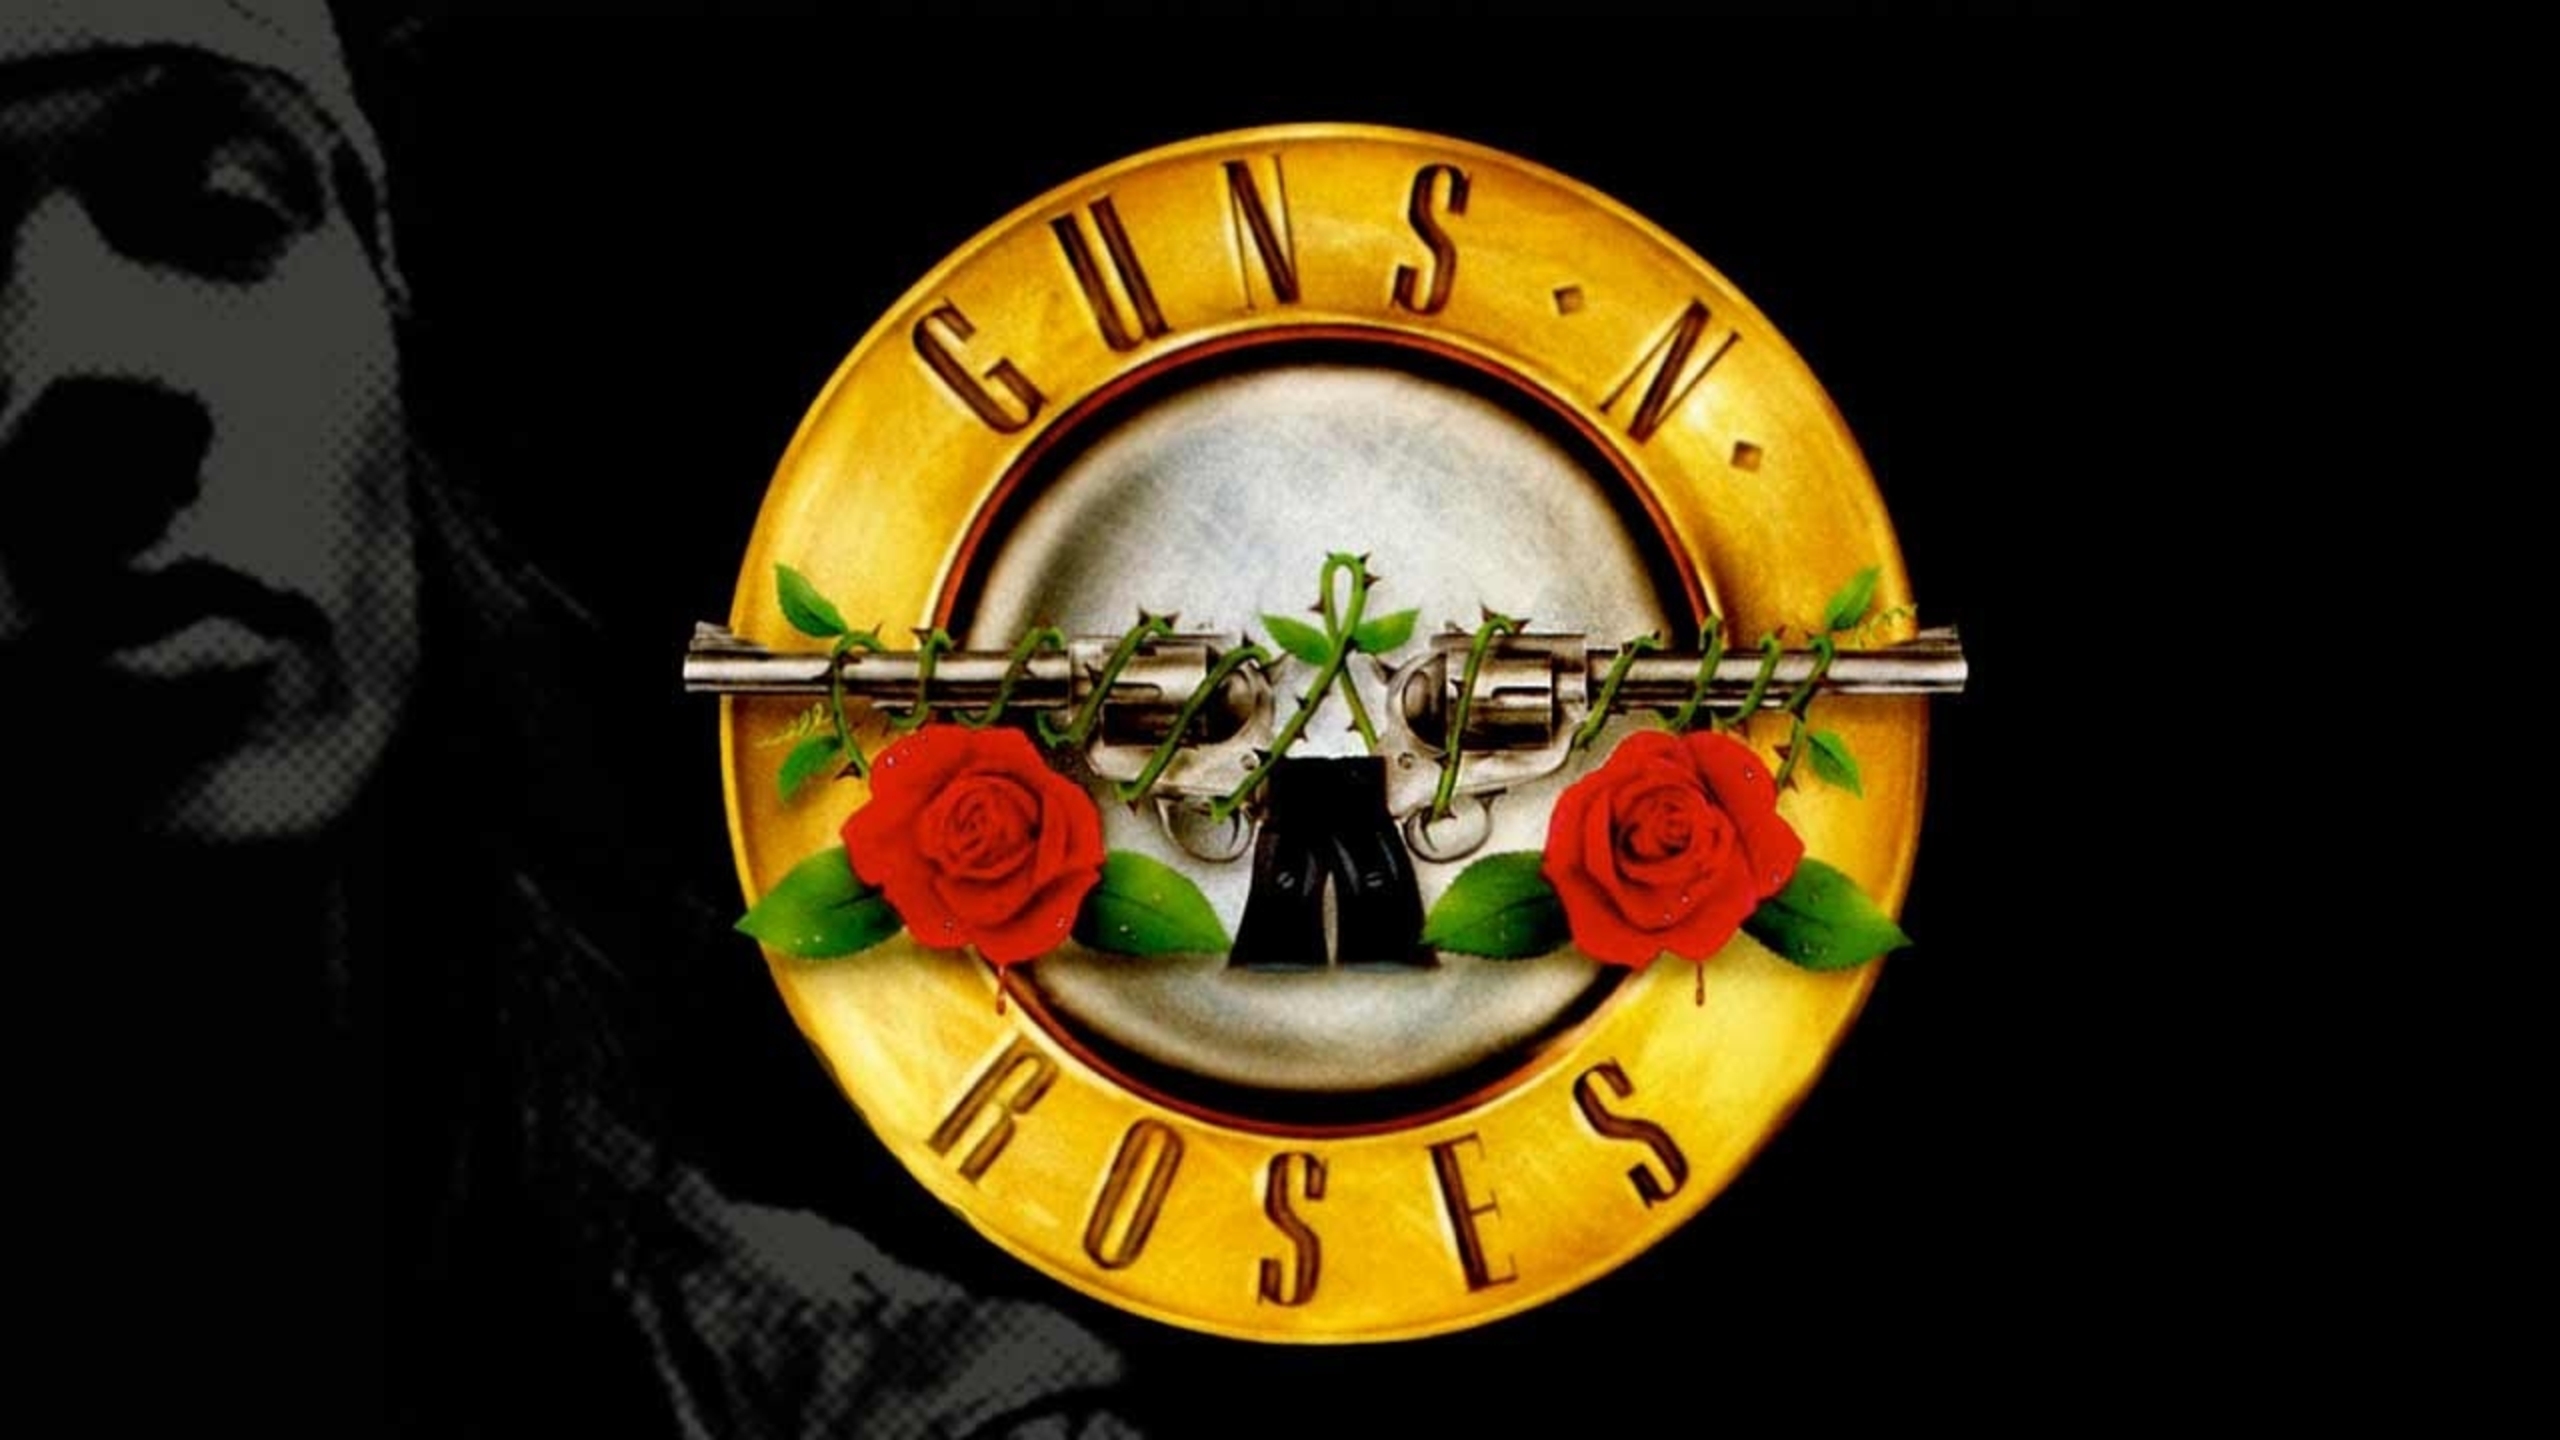 Guns N' Roses demo